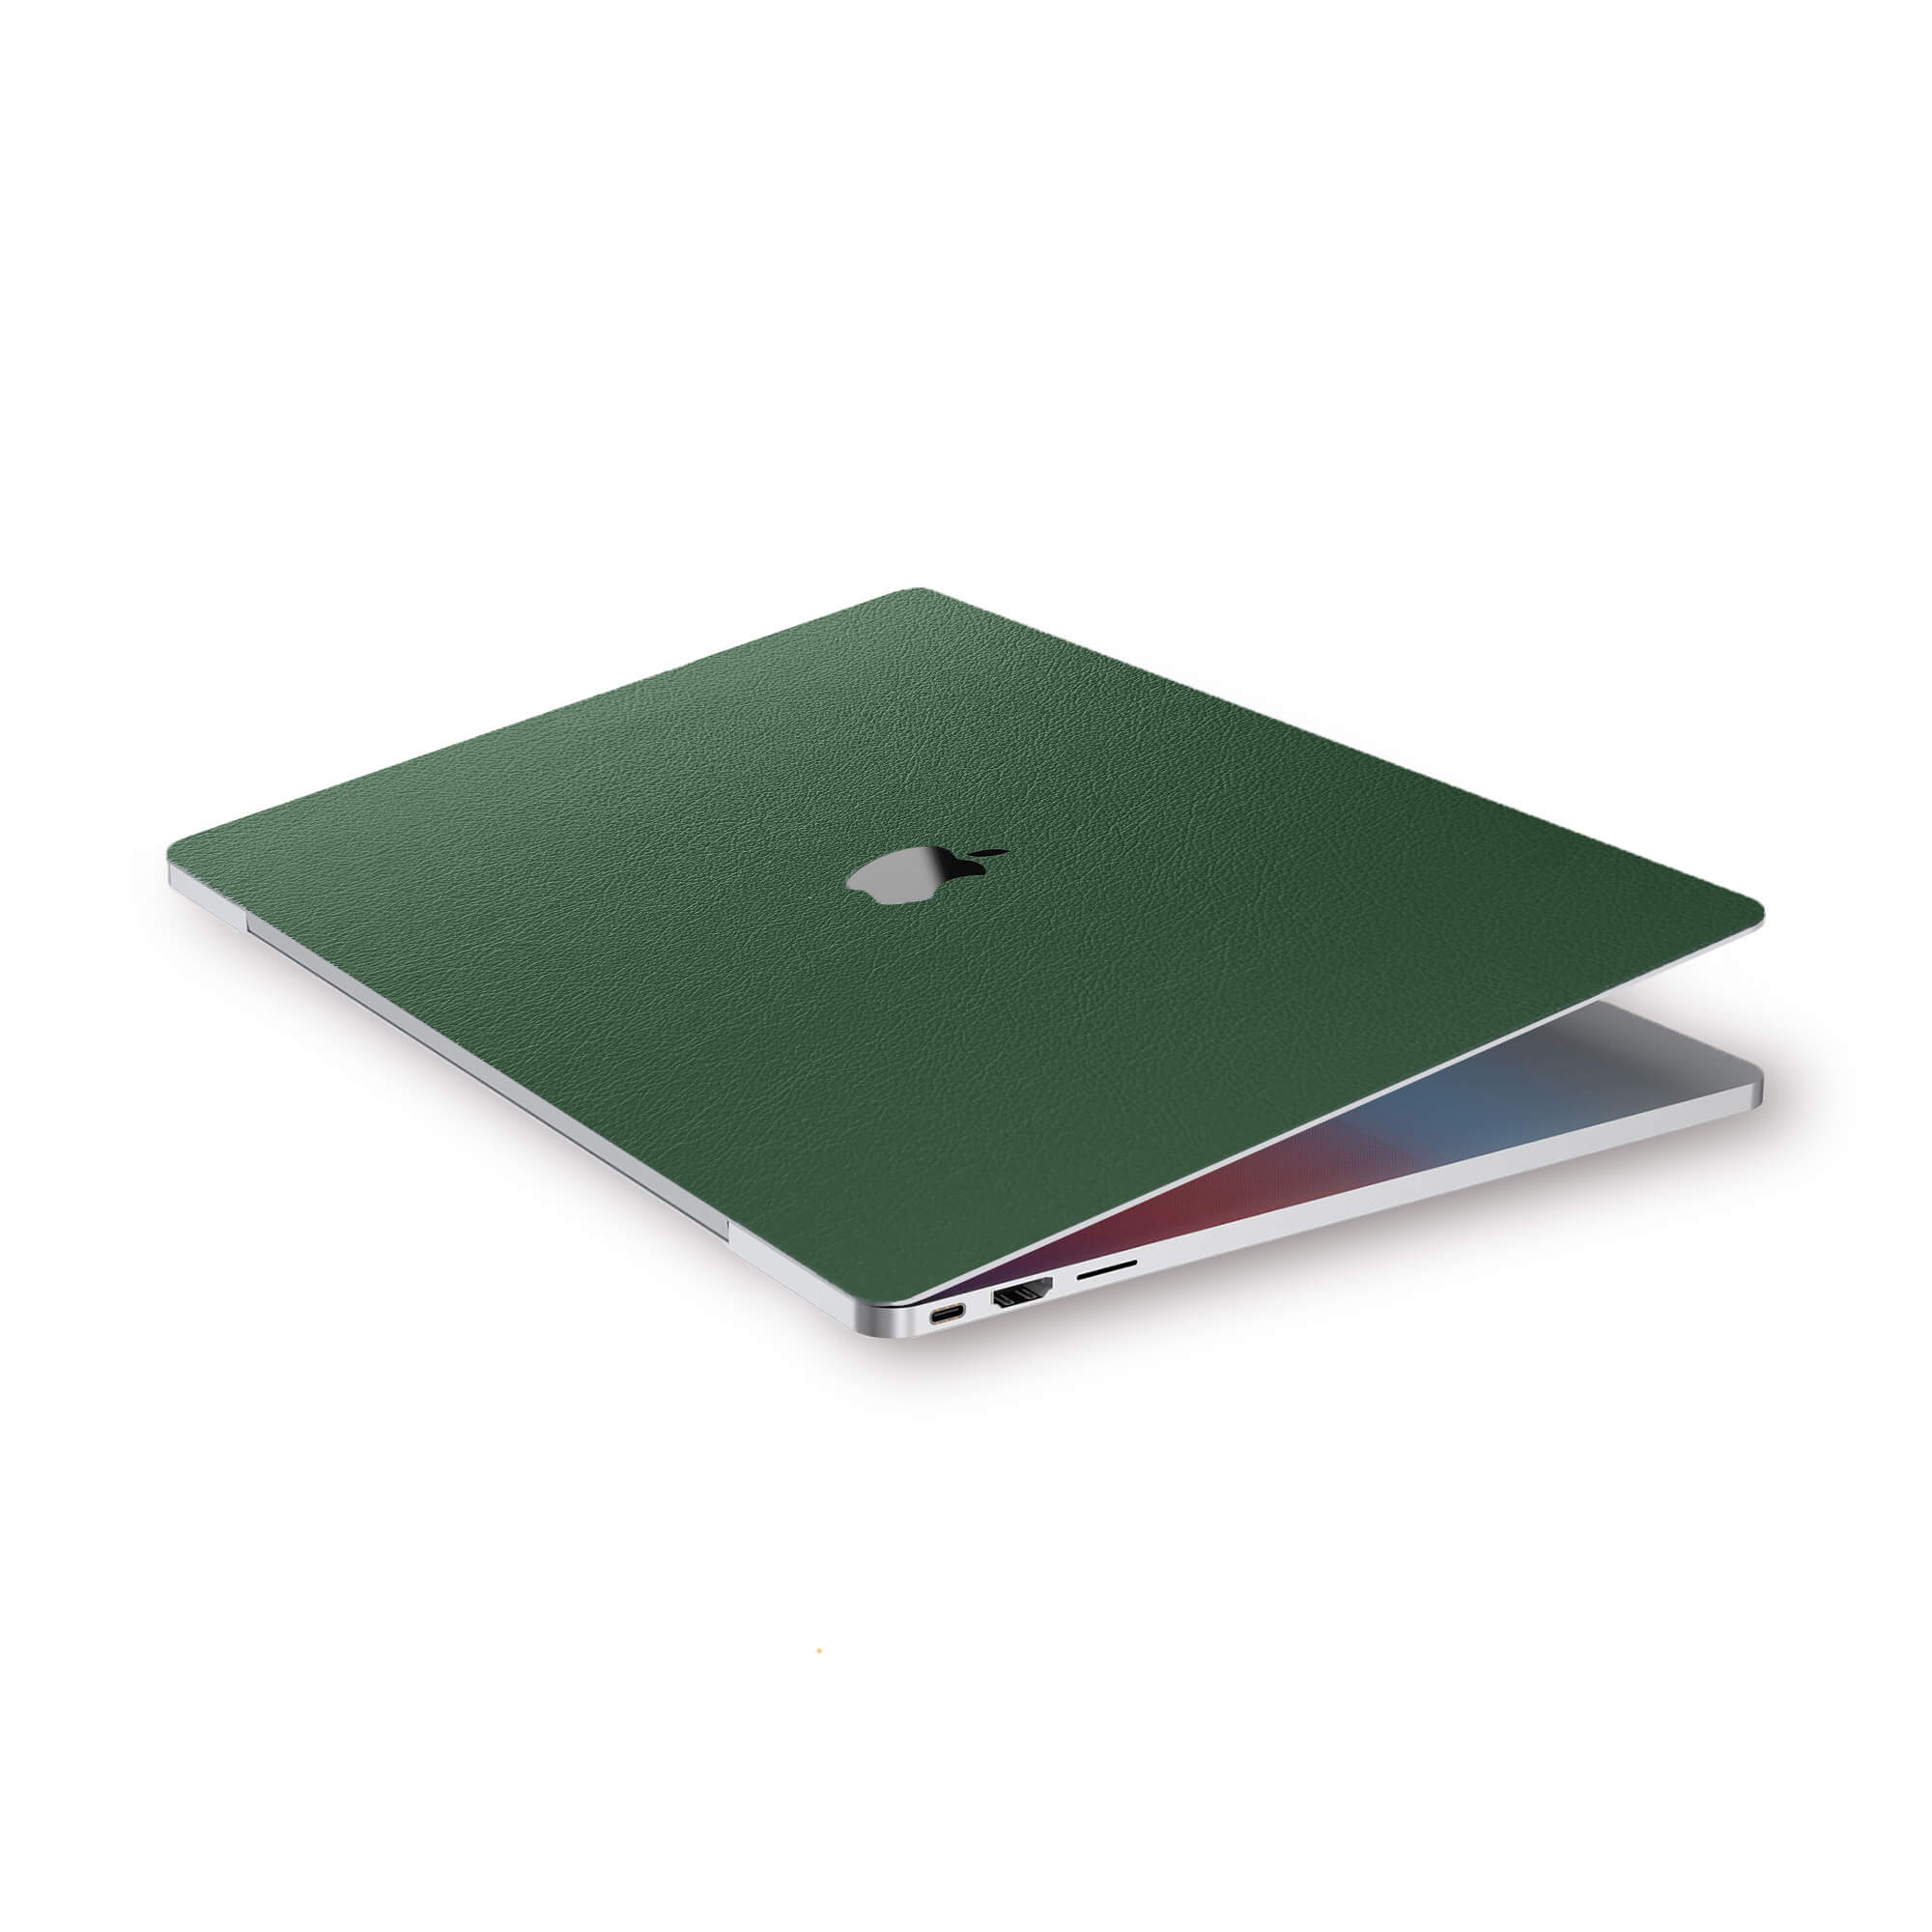 alt:Leather MacBook Skin| var:forest-green